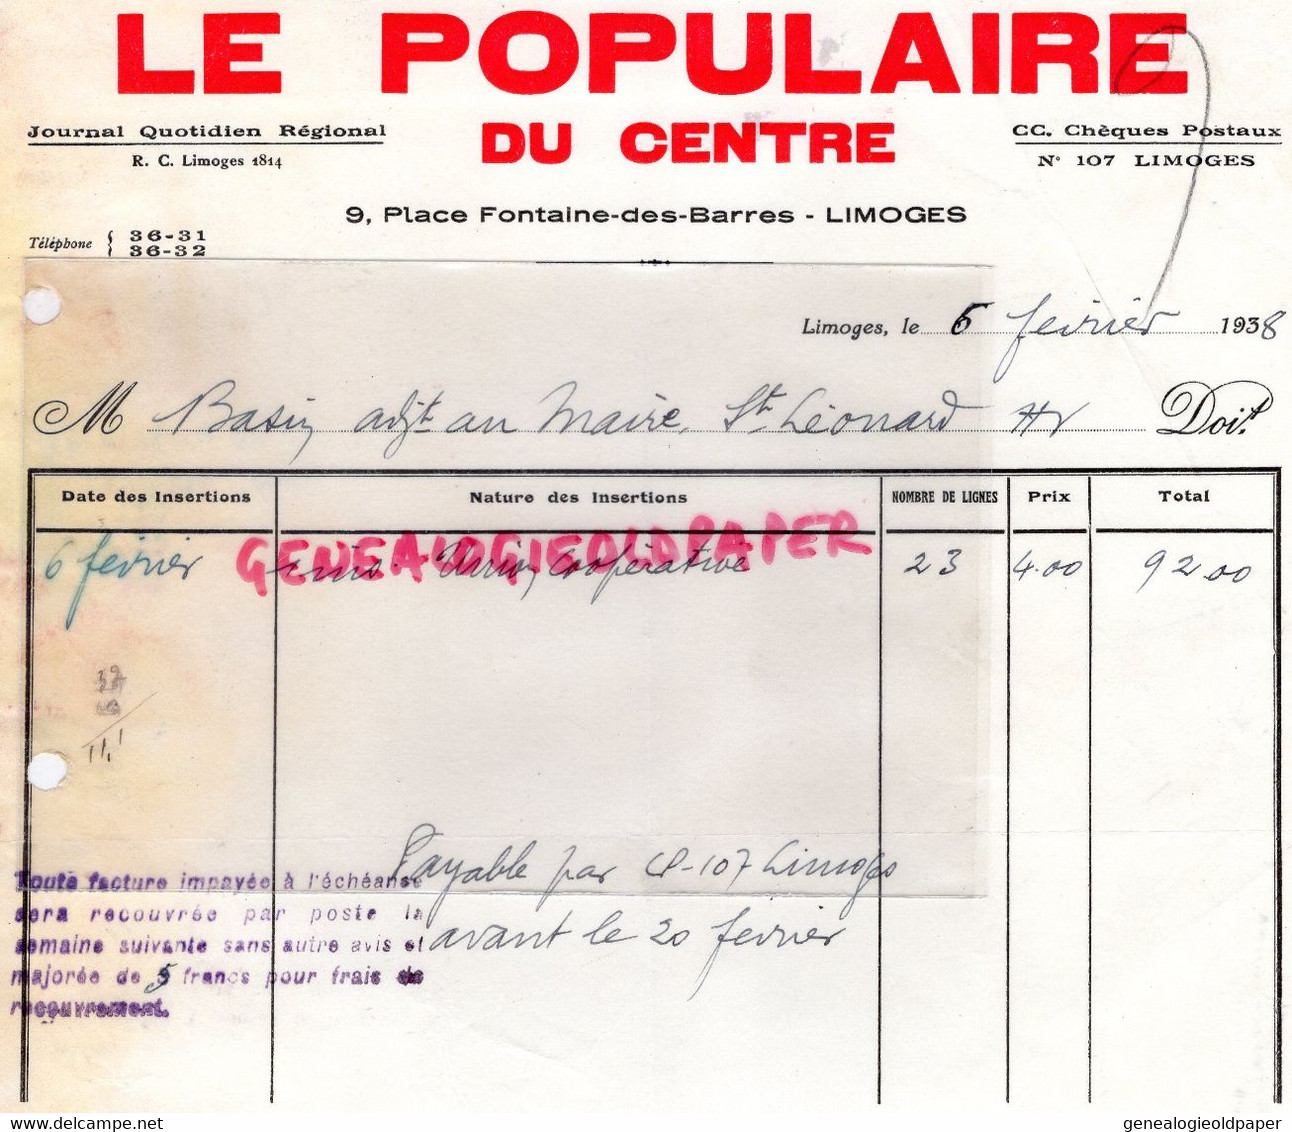 87- LIMOGES- FACTURE- LE POPULAIRE DU CENTRE-9 PLACE FONTAINE DES BARRES - 1938 - SAINT LEONARD DE NOBLAT - Imprimerie & Papeterie